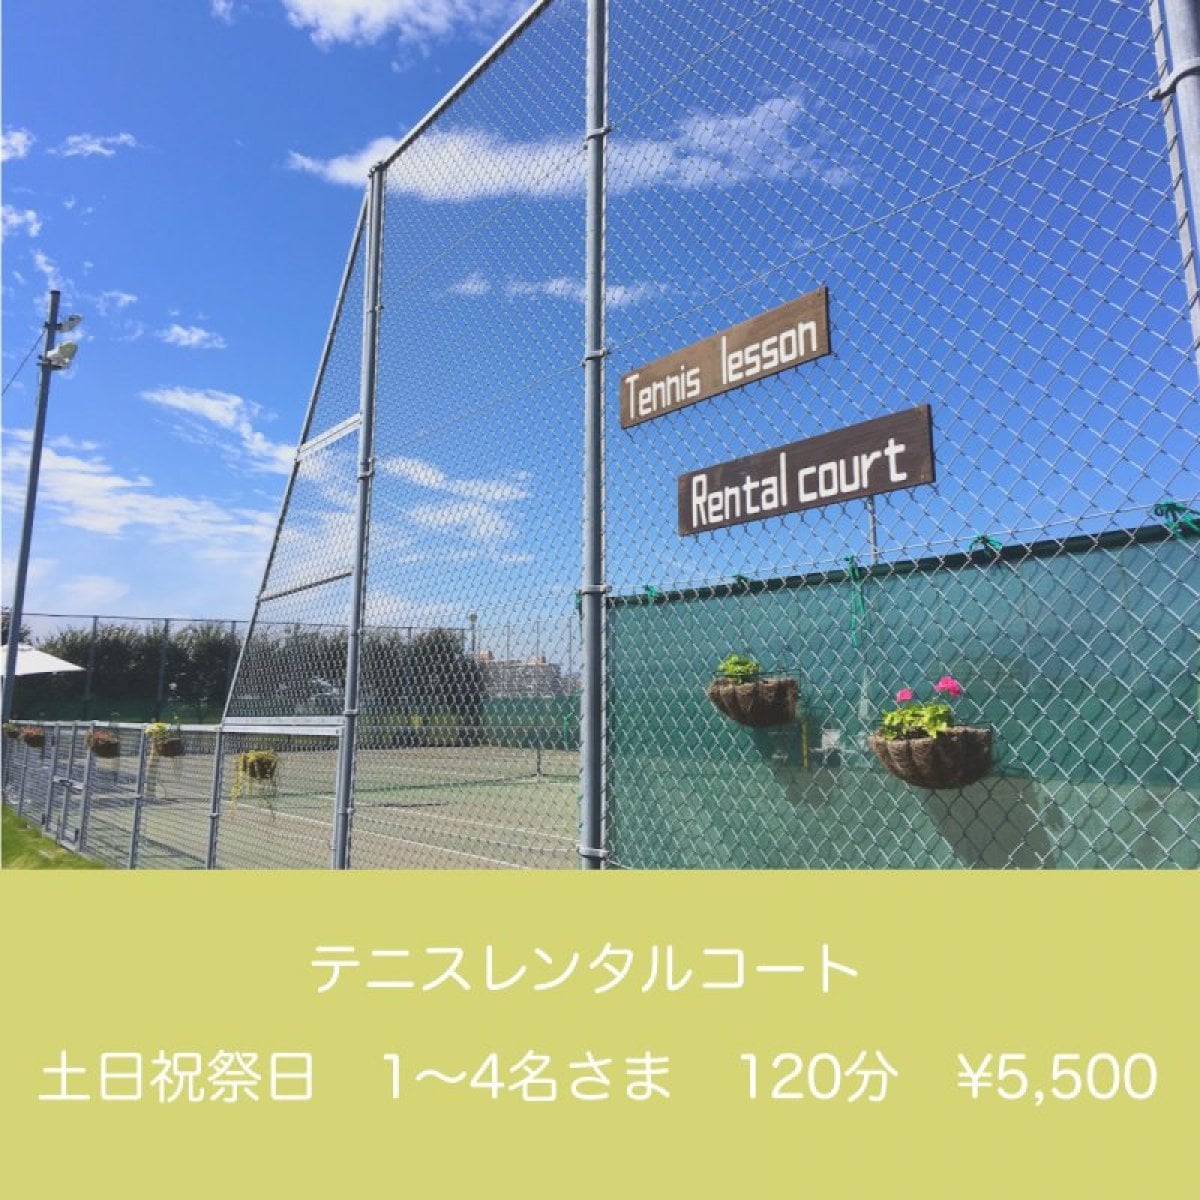 土日祝祭日 / 120分 / 1〜4名様◇テニスレンタルコート